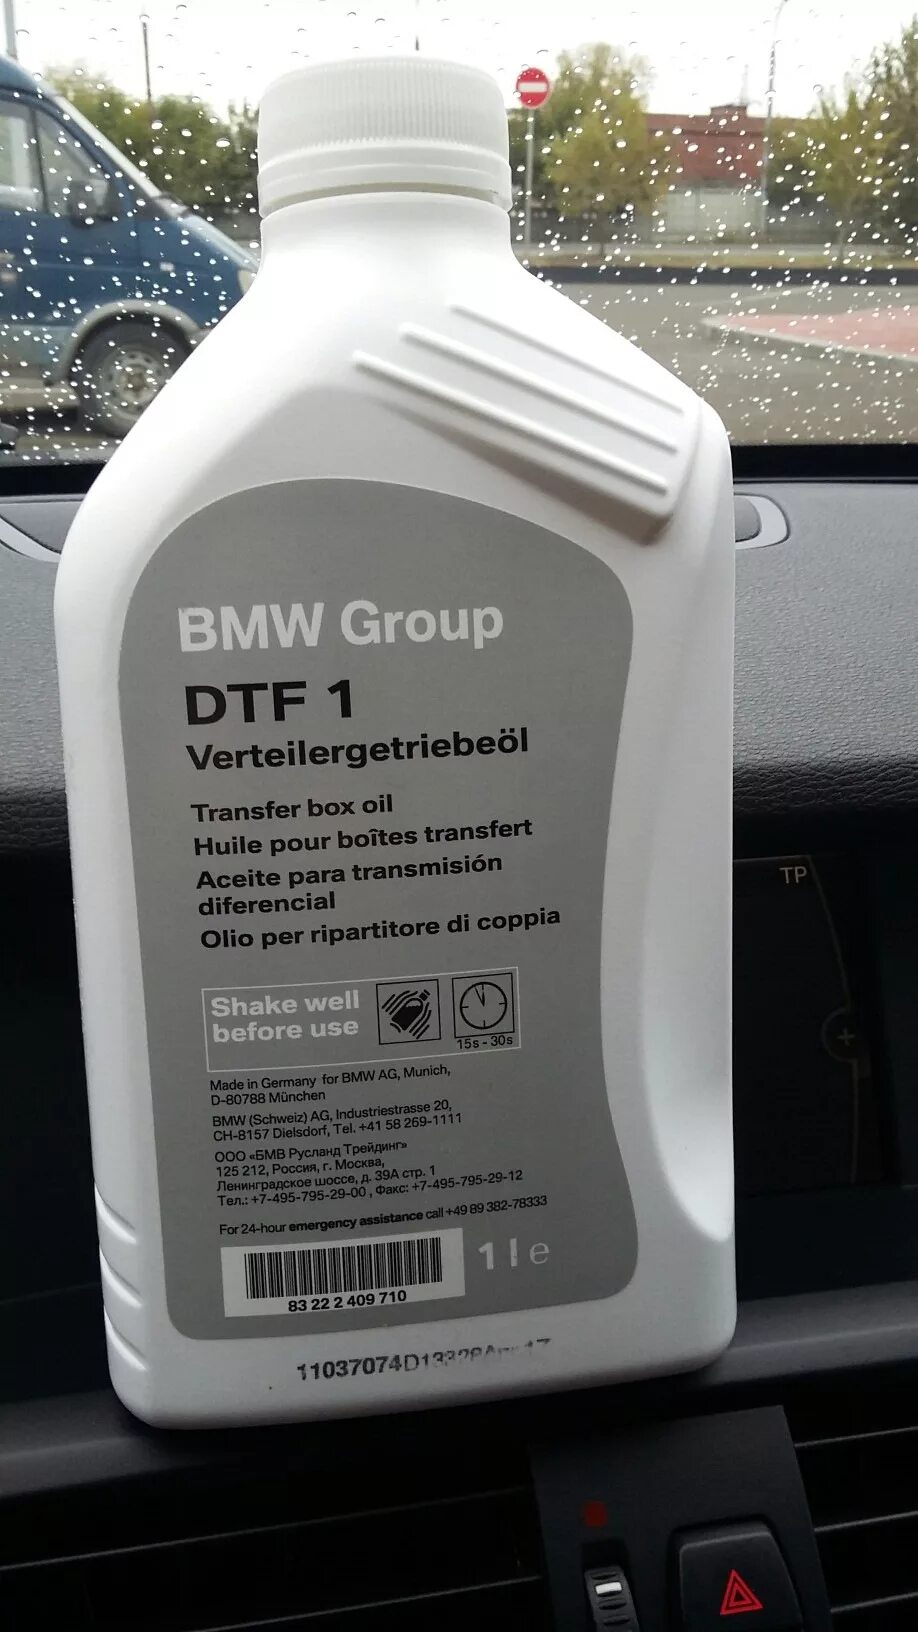 Е83 масло в раздатку. Масло DTF 1 BMW. Масло BMW В раздатку DTF 1. BMW x3 масло в раздатку. Масло в раздатку БМВ x3   2012.